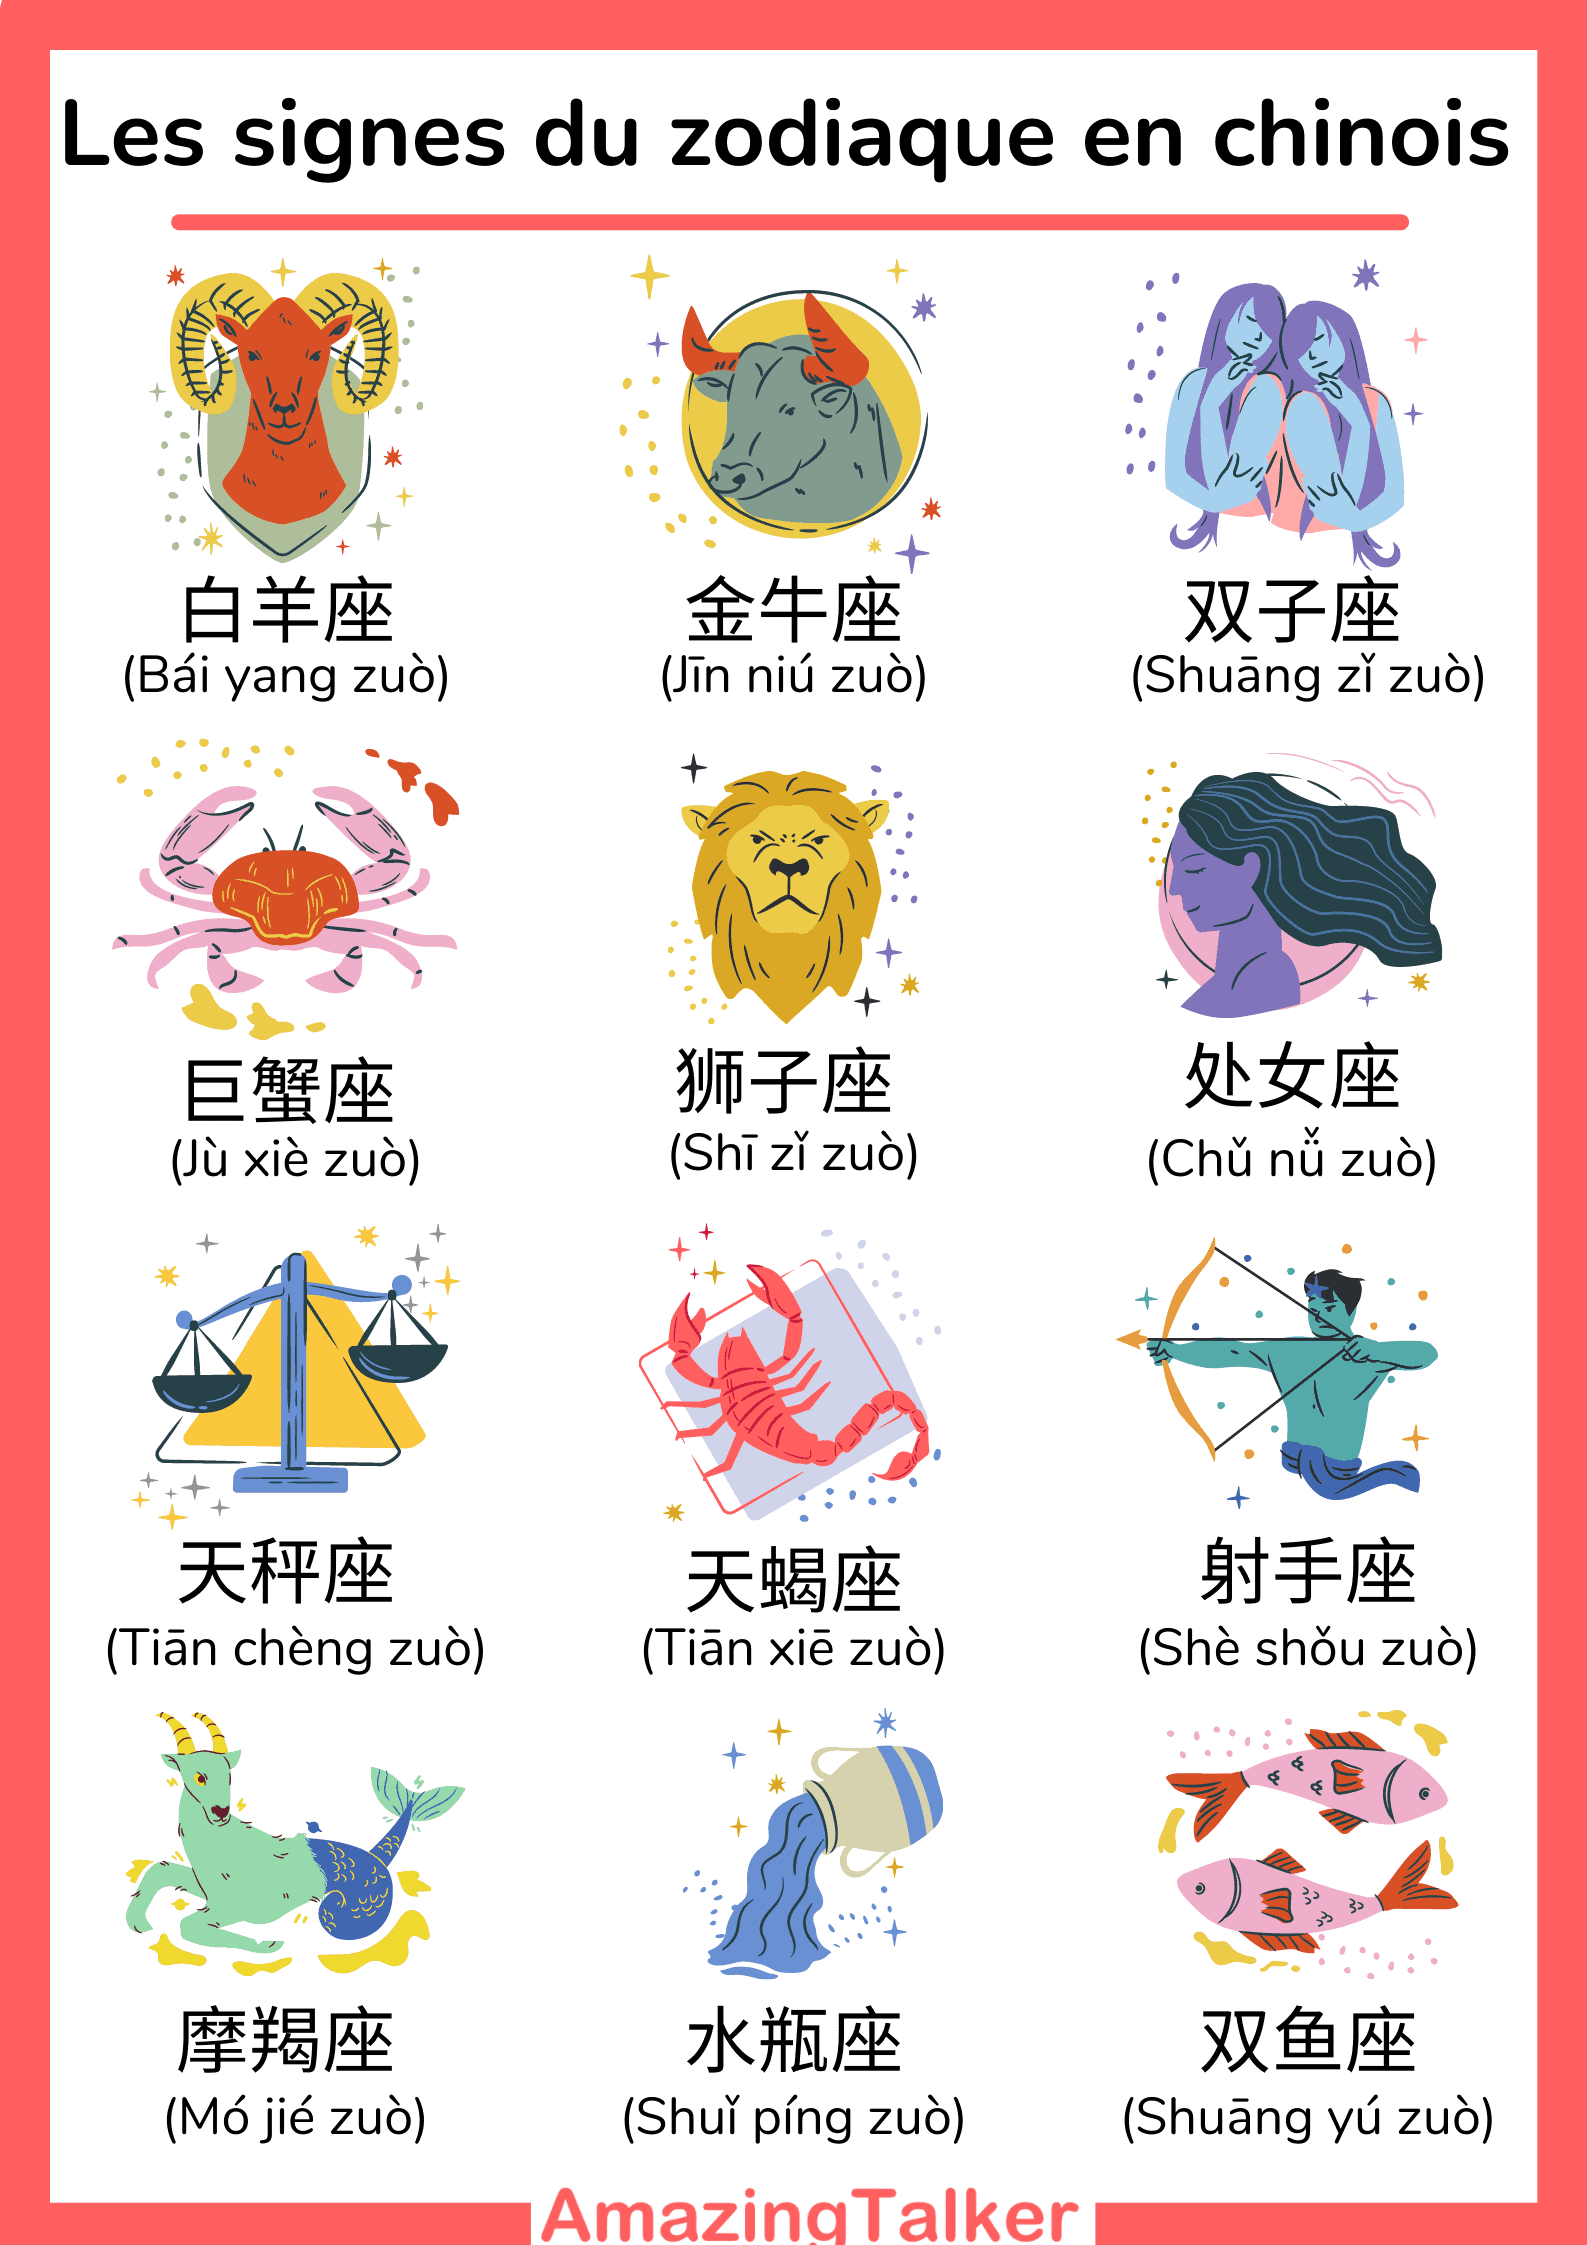 les signes du zodiaque en chinois